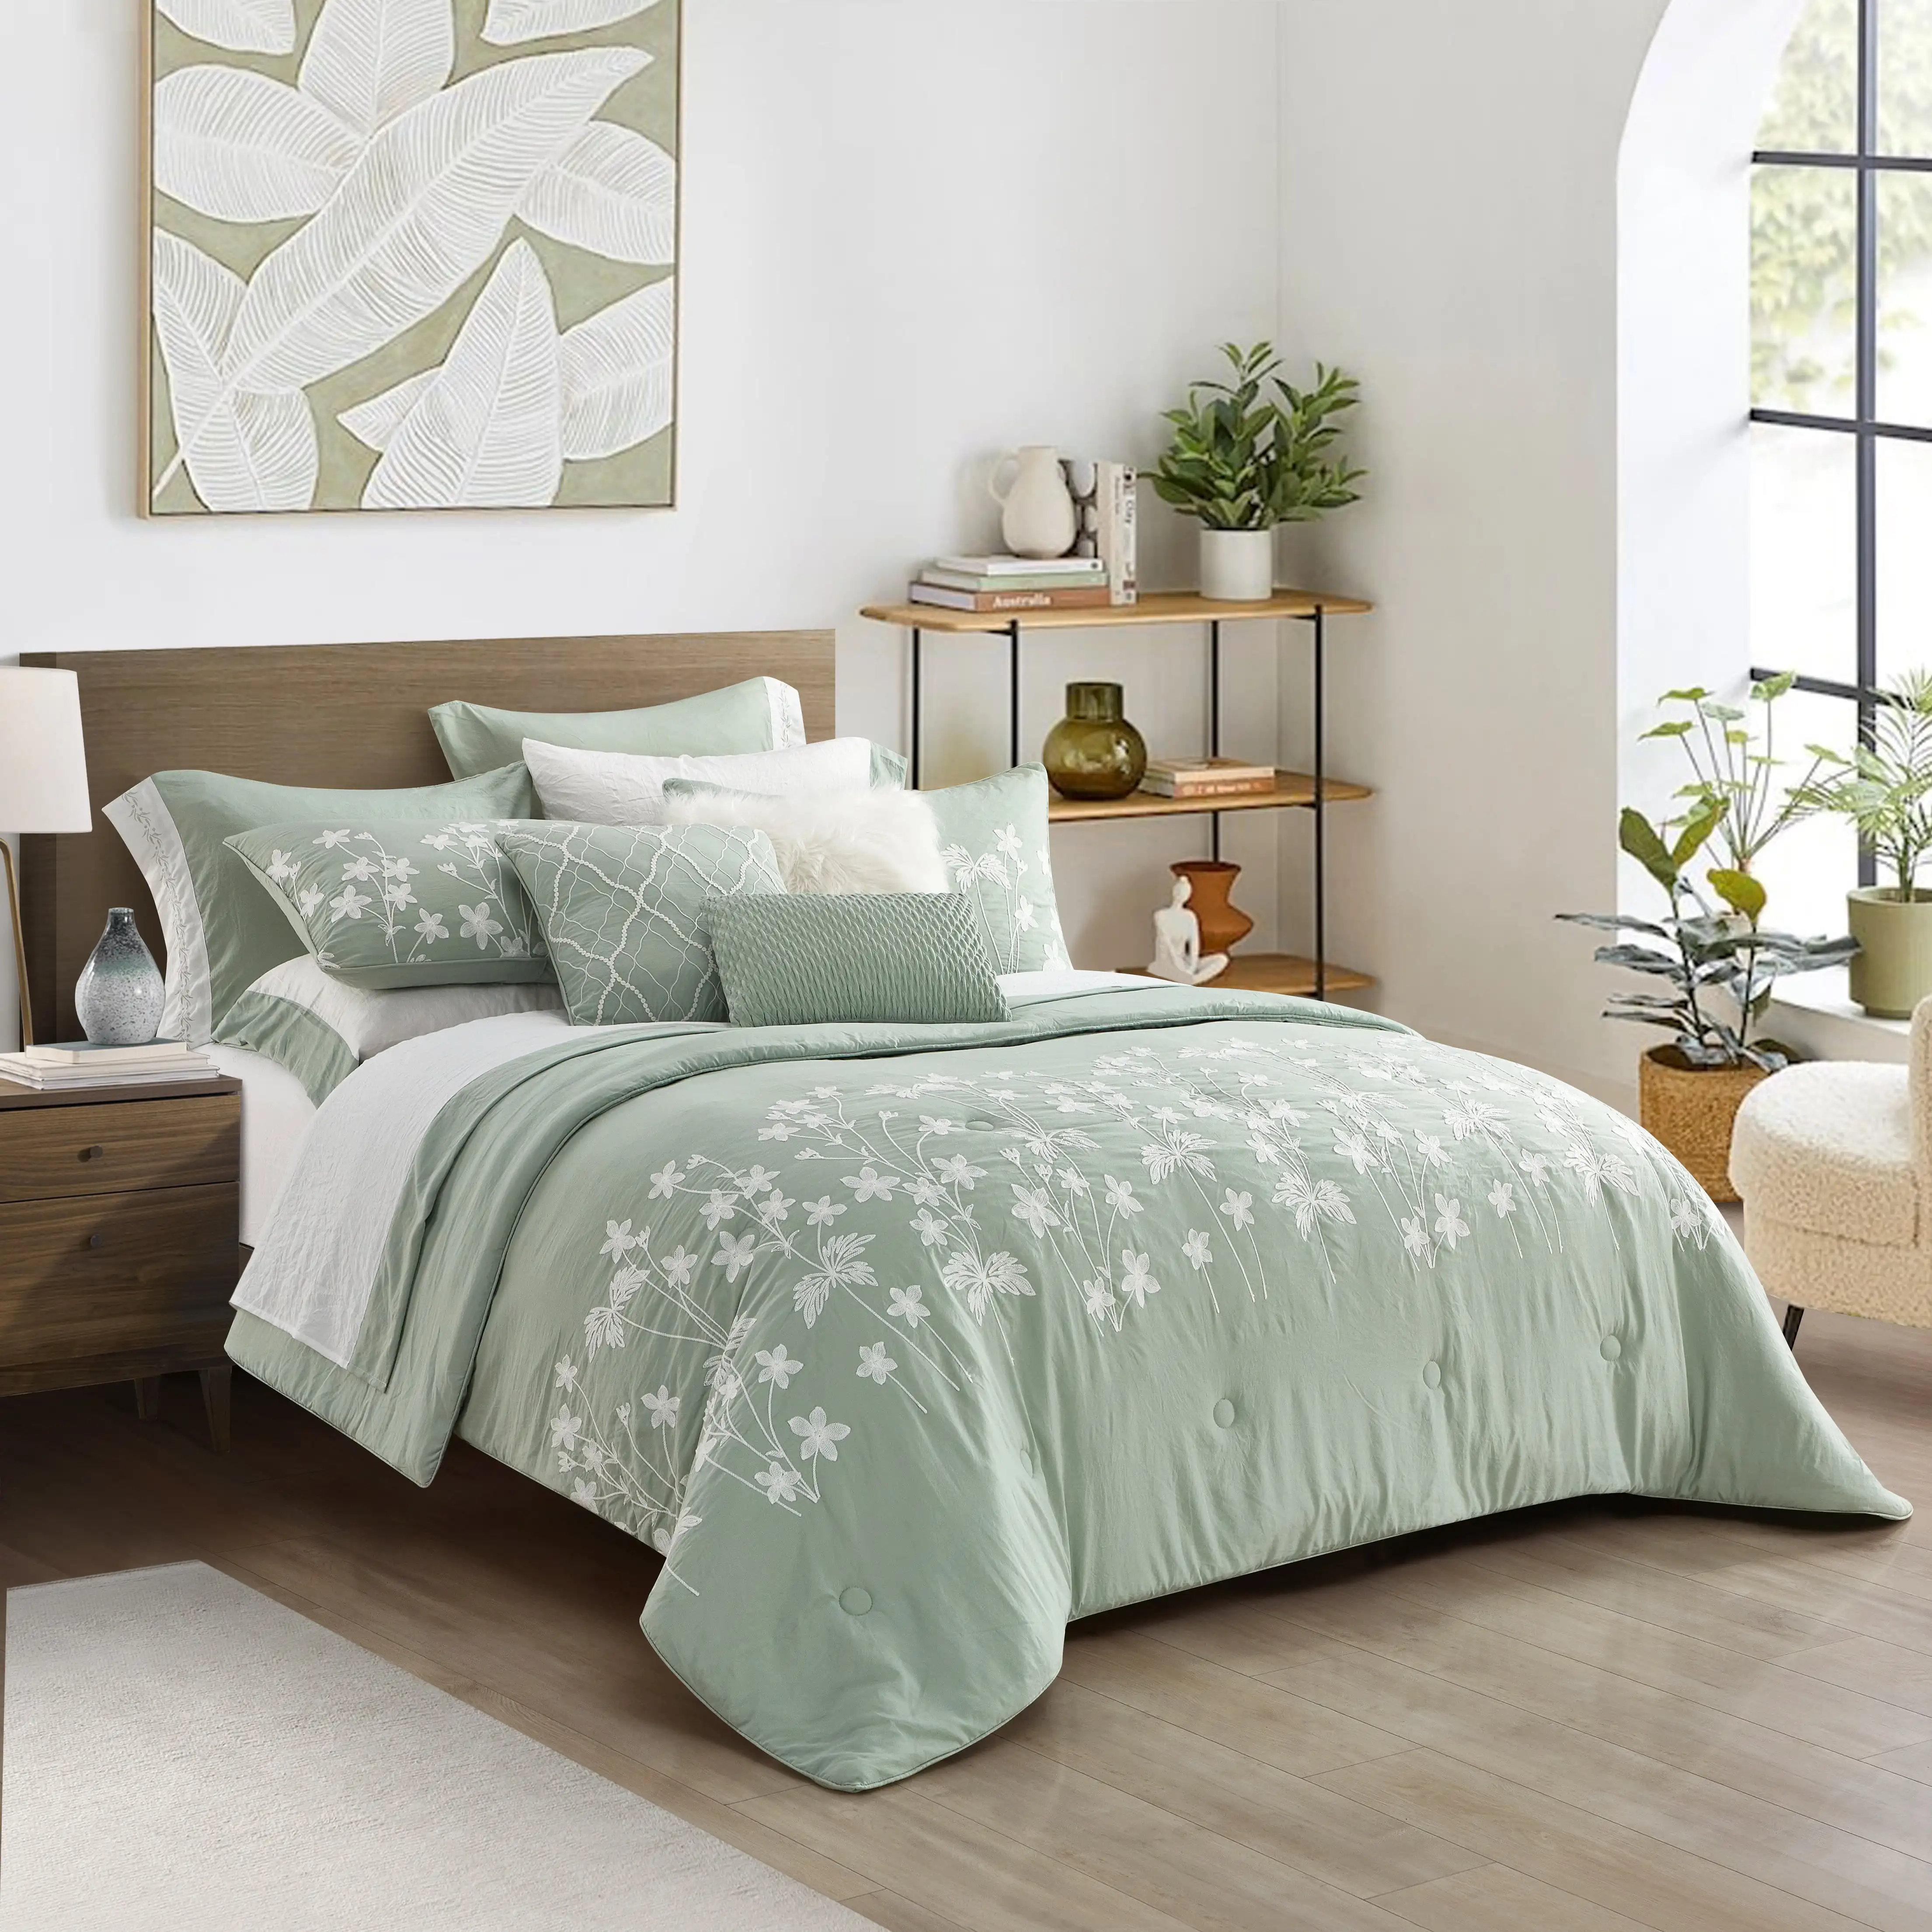 

Better Homes & Gardens Sage Celine 12 Piece Pre Washed Bed in a Bag, KingDouble duvet